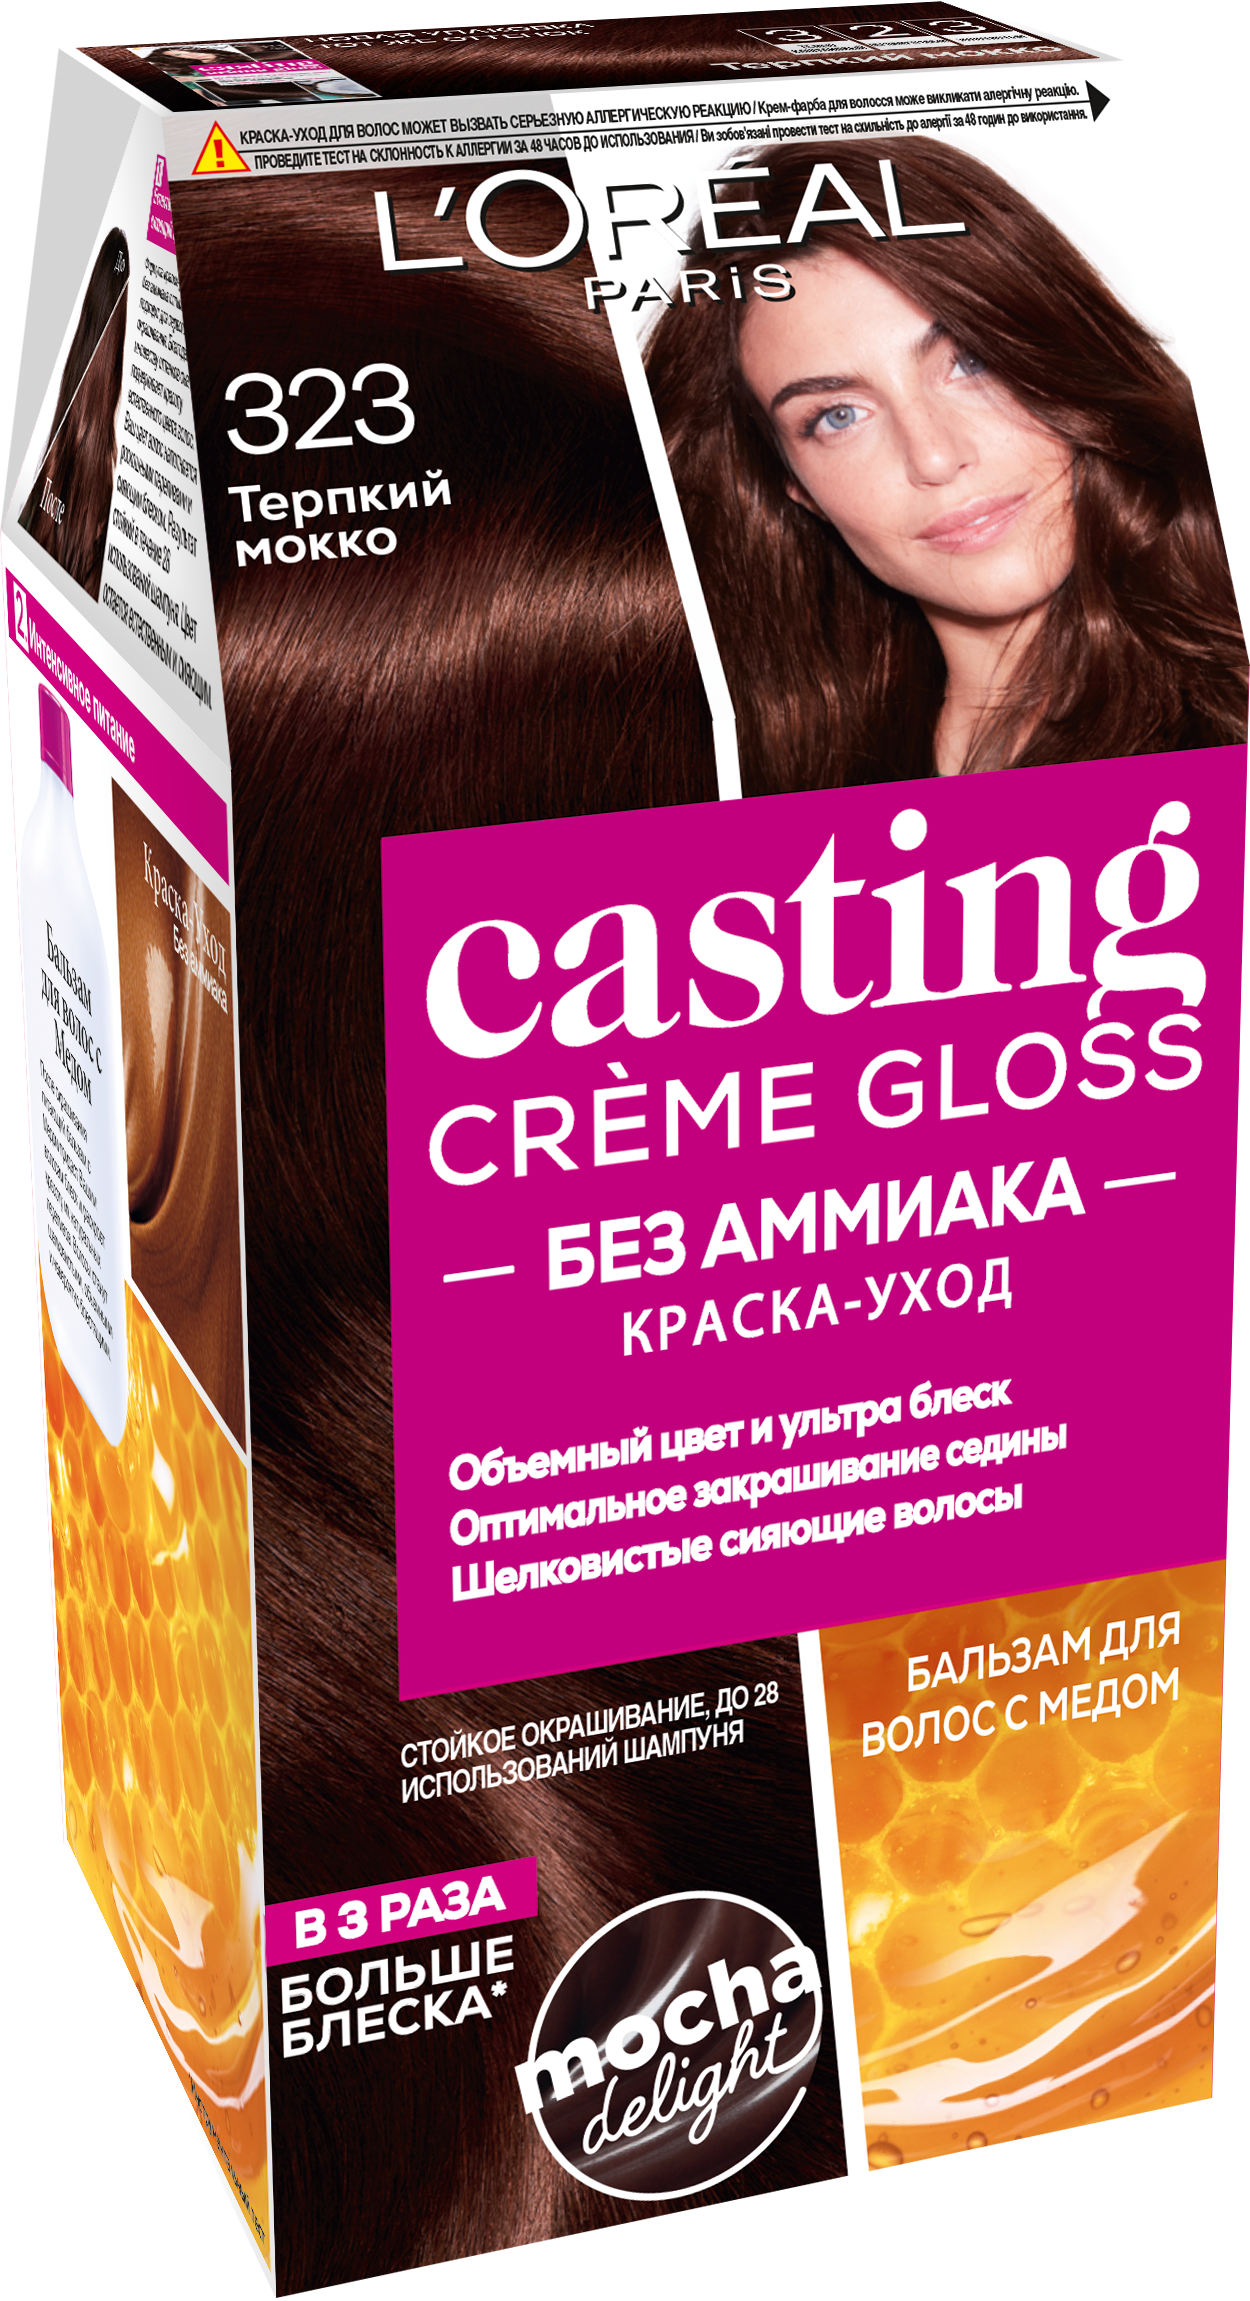 L'Oreal Краска для волос Castinc Crème Closs 323 Chocolat черный шоколад